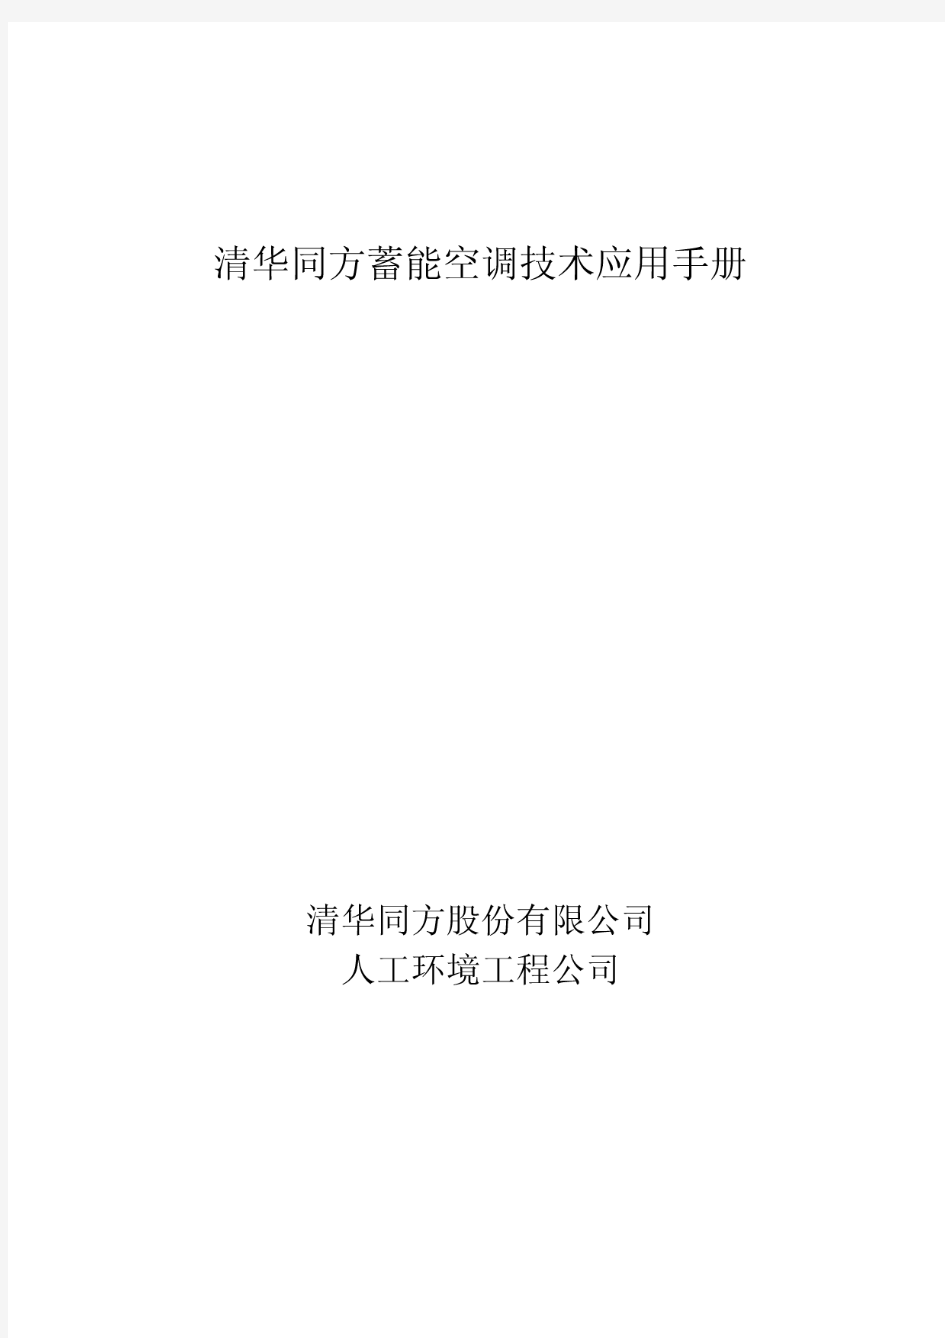 清华同方股份有限公司人工环境工程公司清华同方蓄能空调技术应用手册